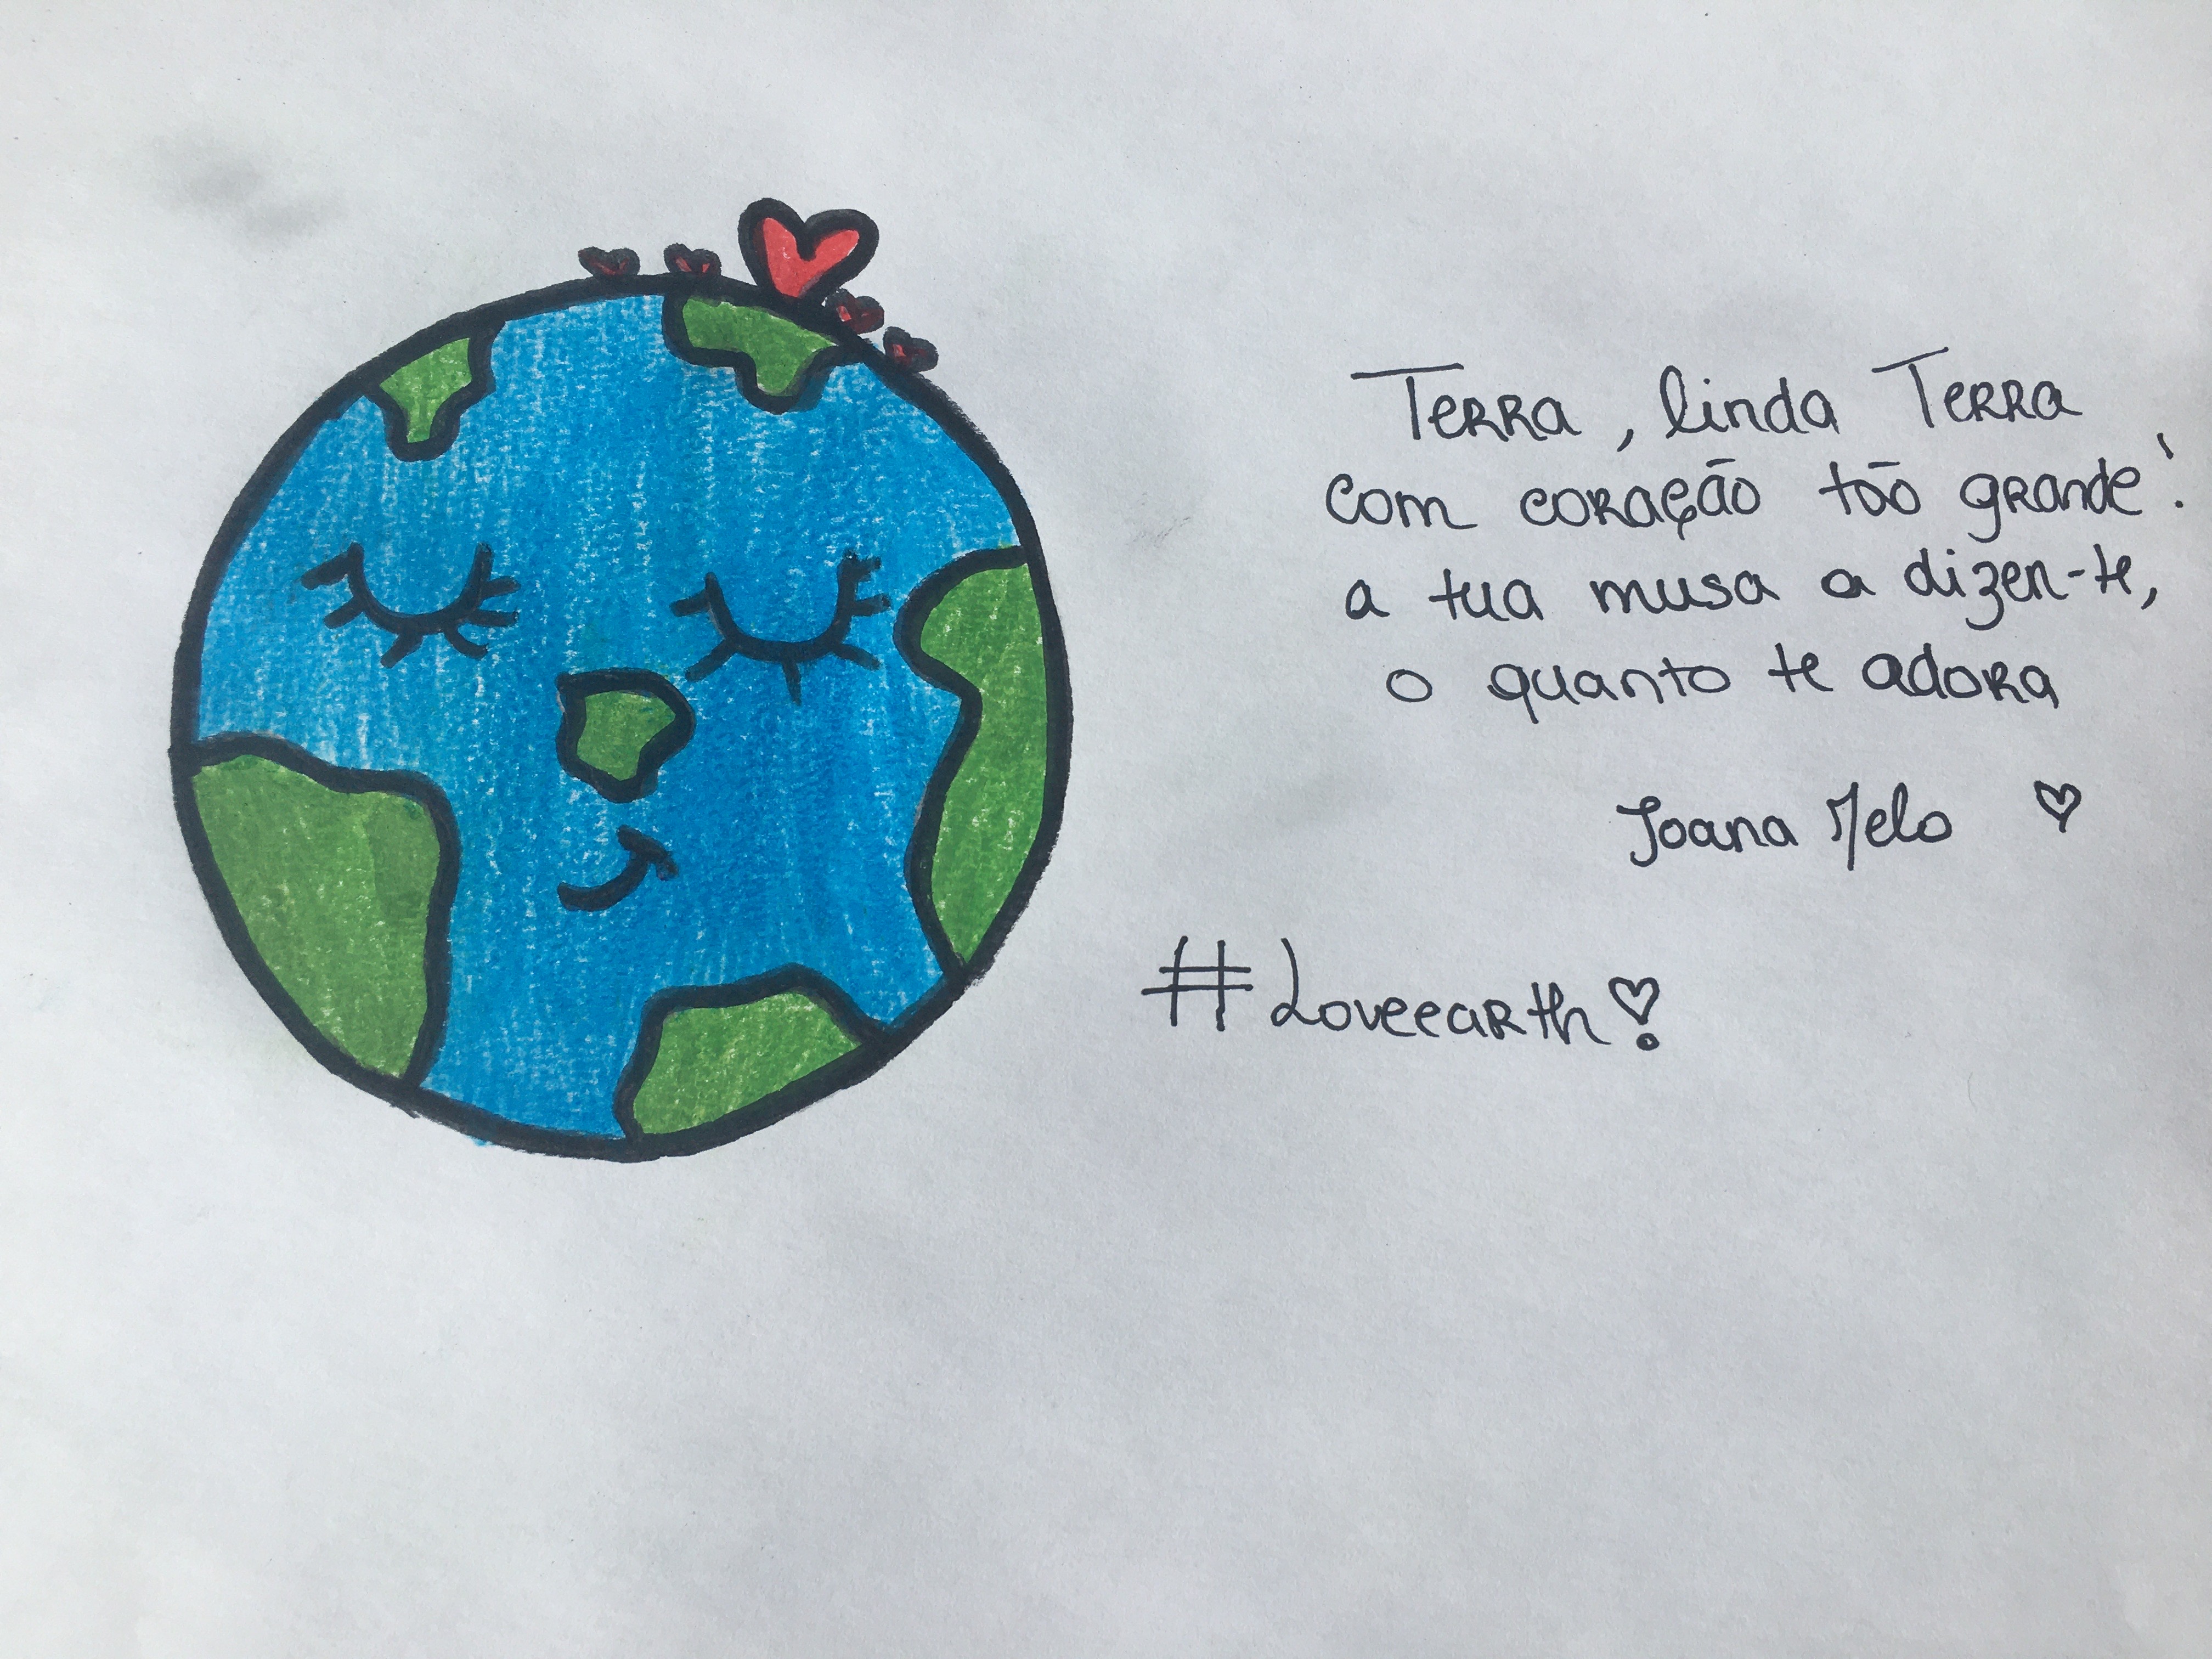 Joana Melo, 8 ano, turma I<br/><br/>Terra, linda Terra<br />
com um coração tão grande<br />
a tua musa a dizer-te<br />
o quanto te adora